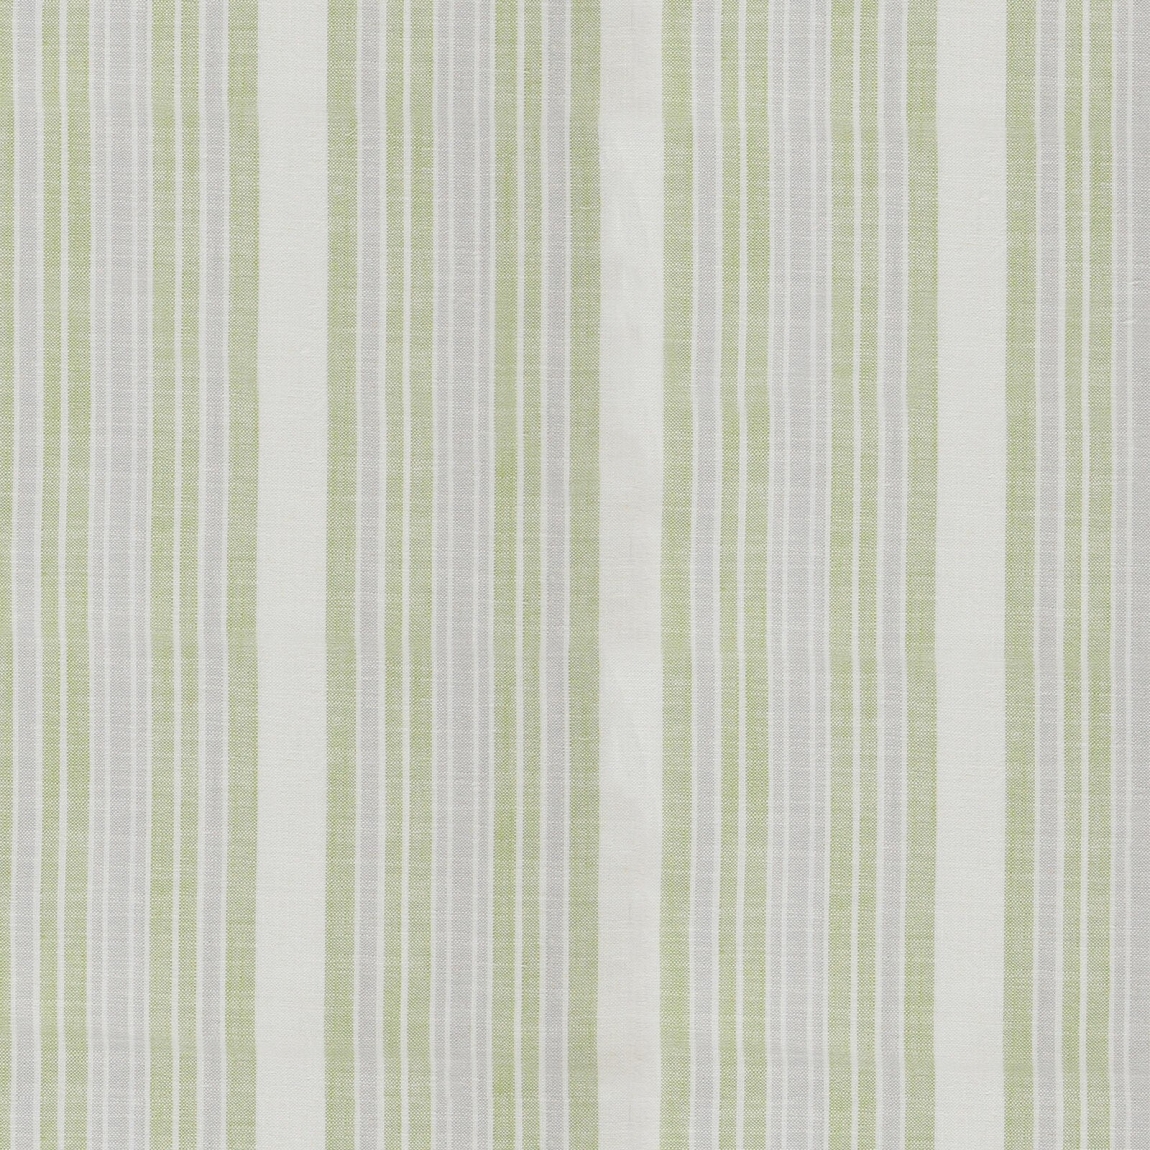 Stripe Curtain Linen Field Essex 03 Moss Stripe Curtain Fabric Curtain Cloth Textile / Curtain Fabric Choose Sample / Pattern Chart